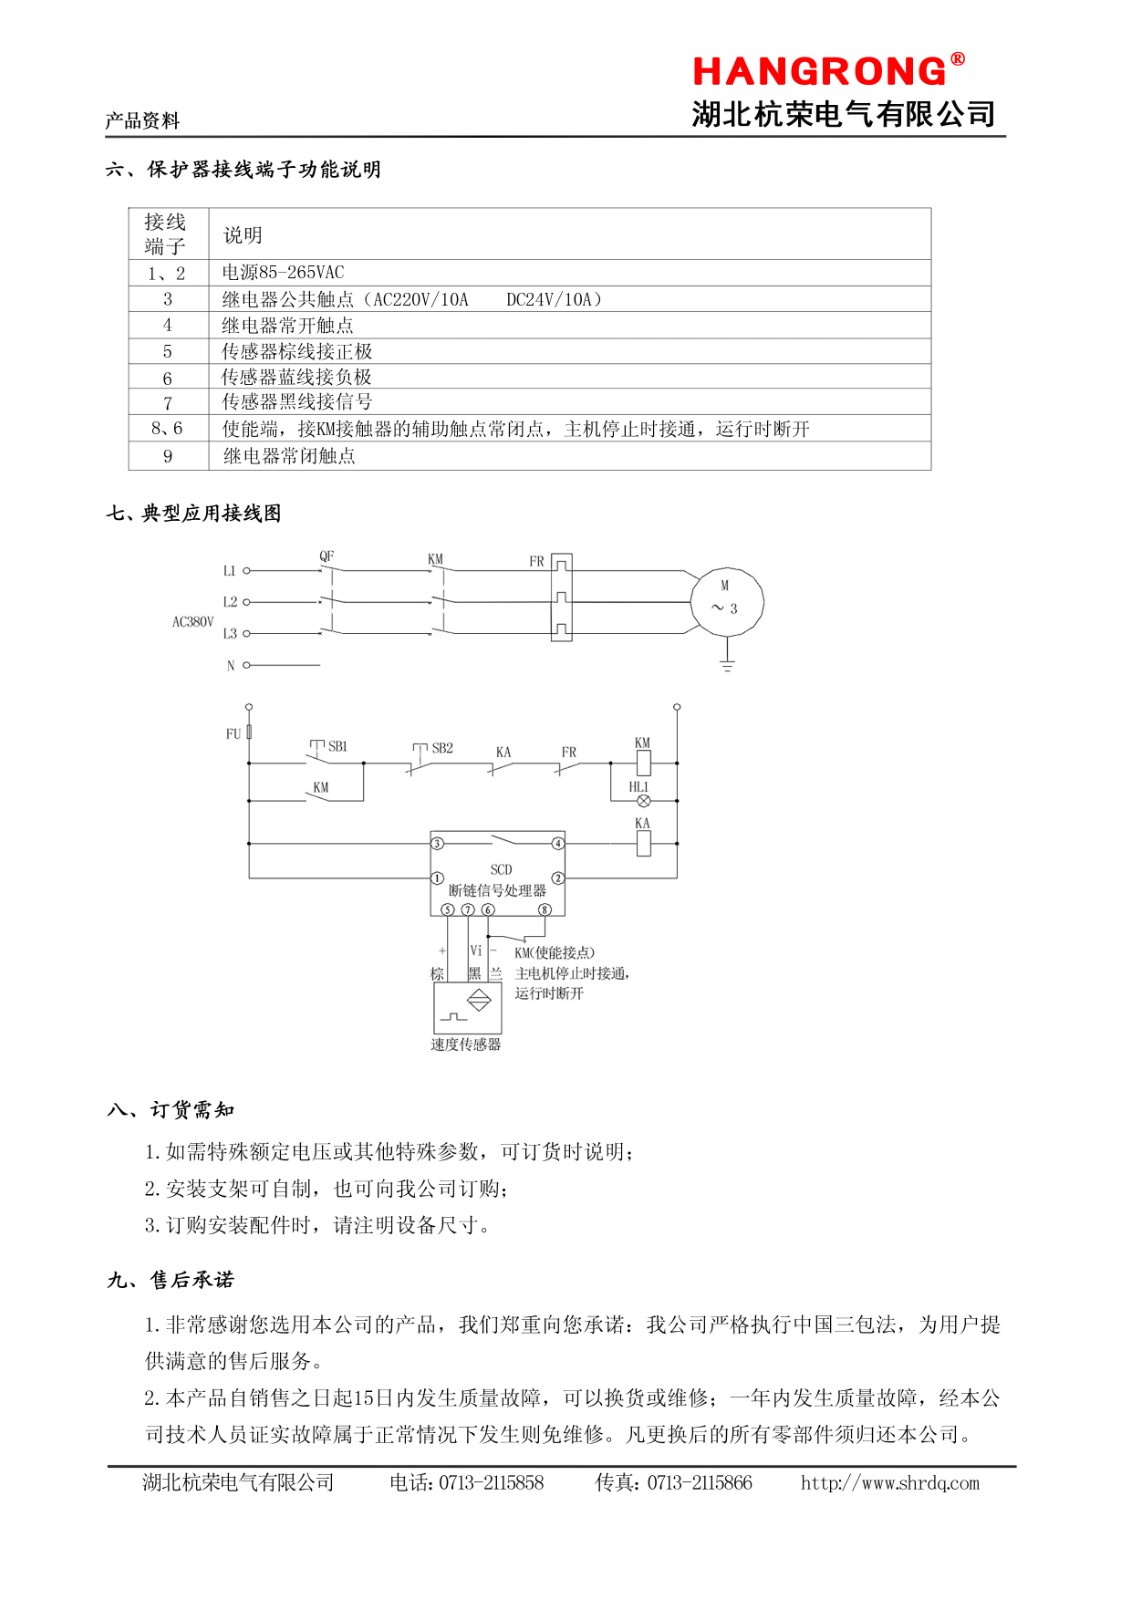 湖北杭荣断链保护器和速度传感器说明书3.jpg